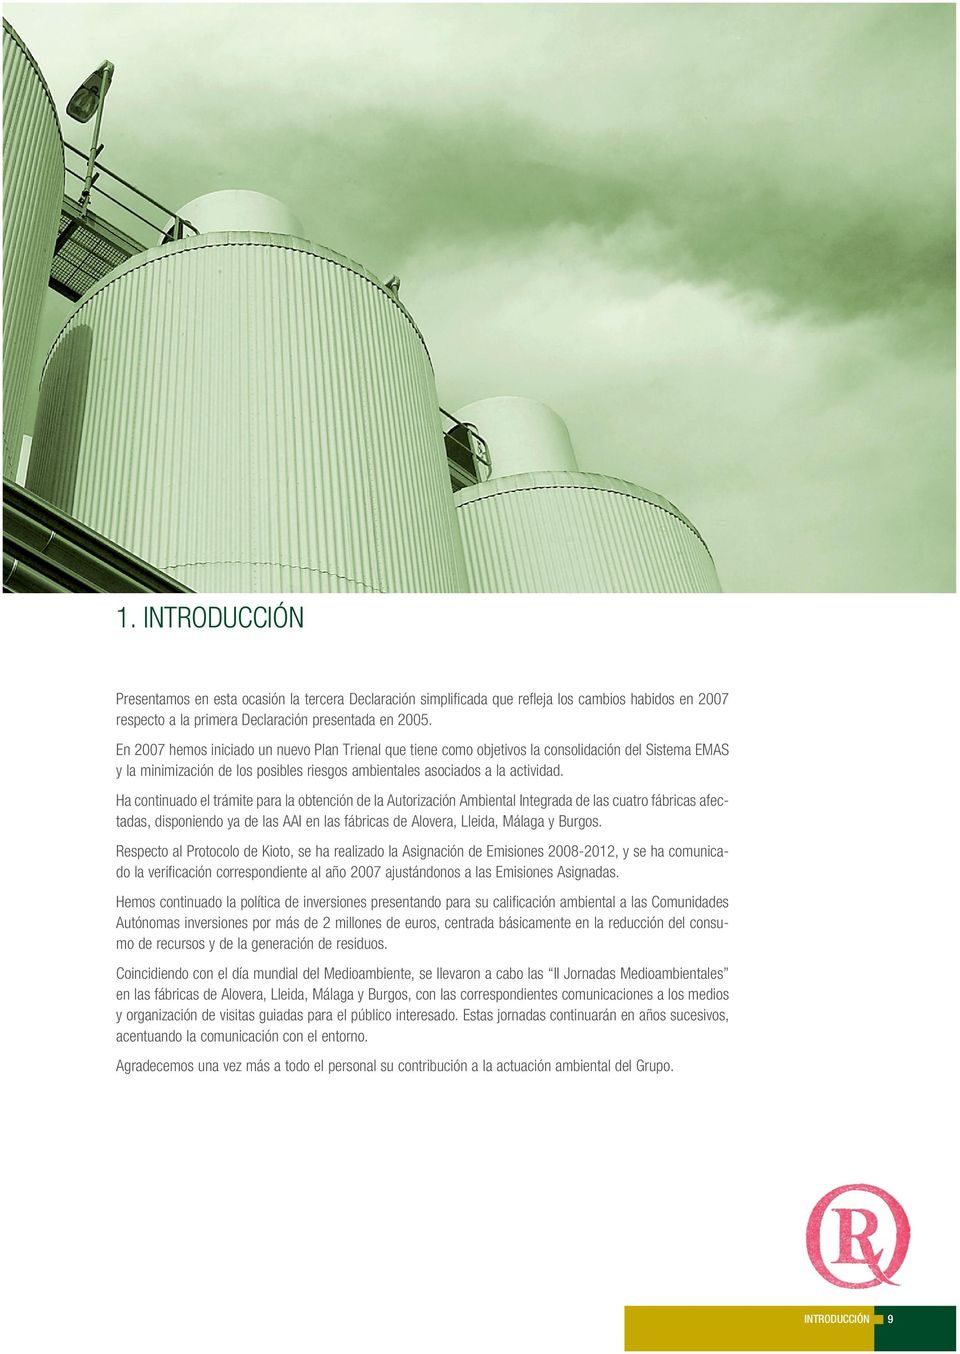 Ha continuado el trámite para la obtención de la Autorización Ambiental Integrada de las cuatro fábricas afectadas, disponiendo ya de las AAI en las fábricas de Alovera, Lleida, Málaga y Burgos.